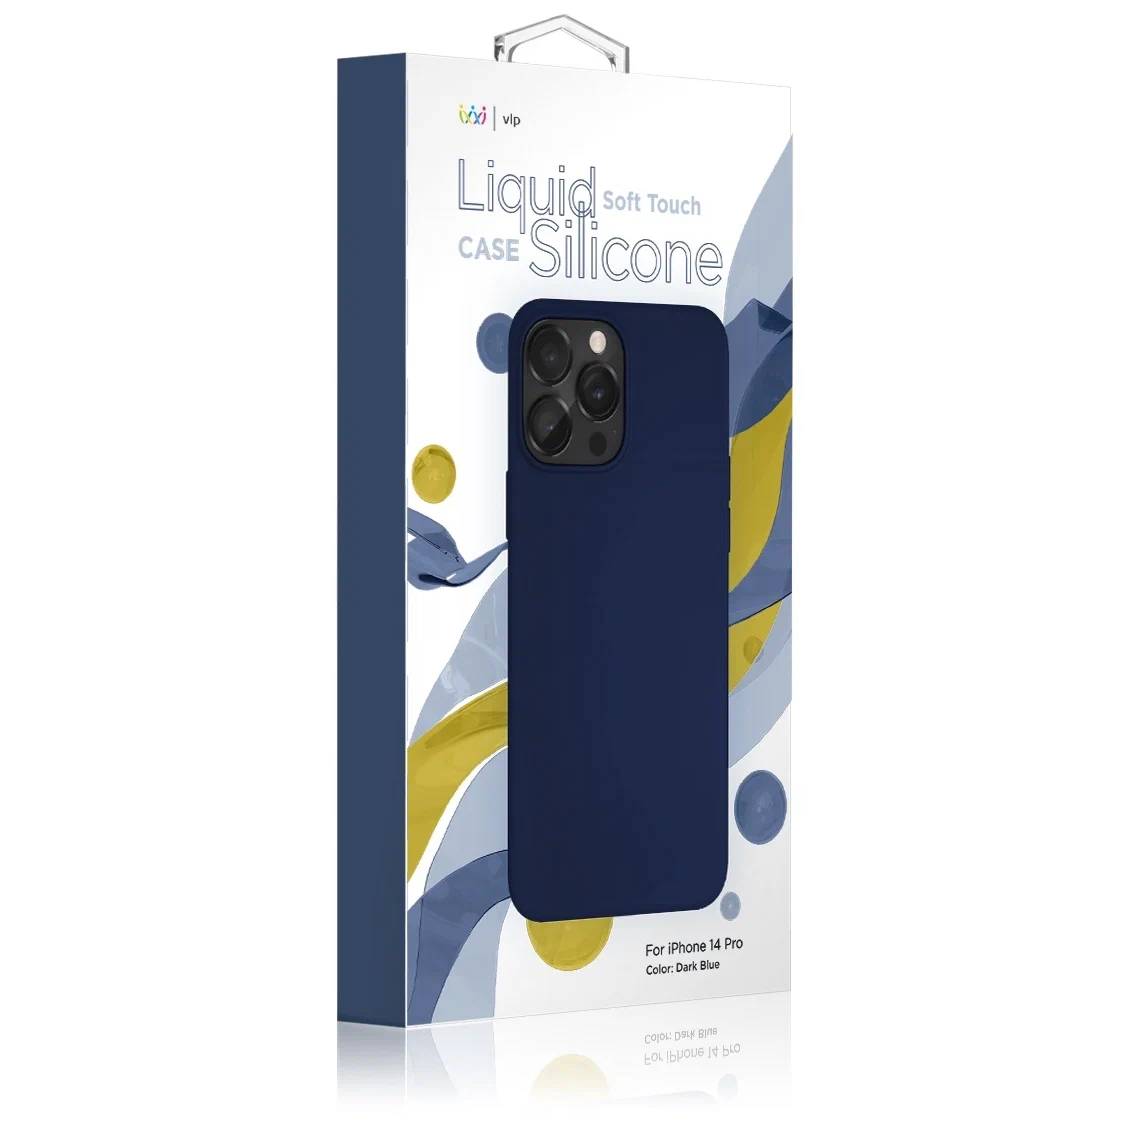 Фото — Чехол для смартфона "vlp" Silicone case для iPhone 14 Pro Max, темно-синий